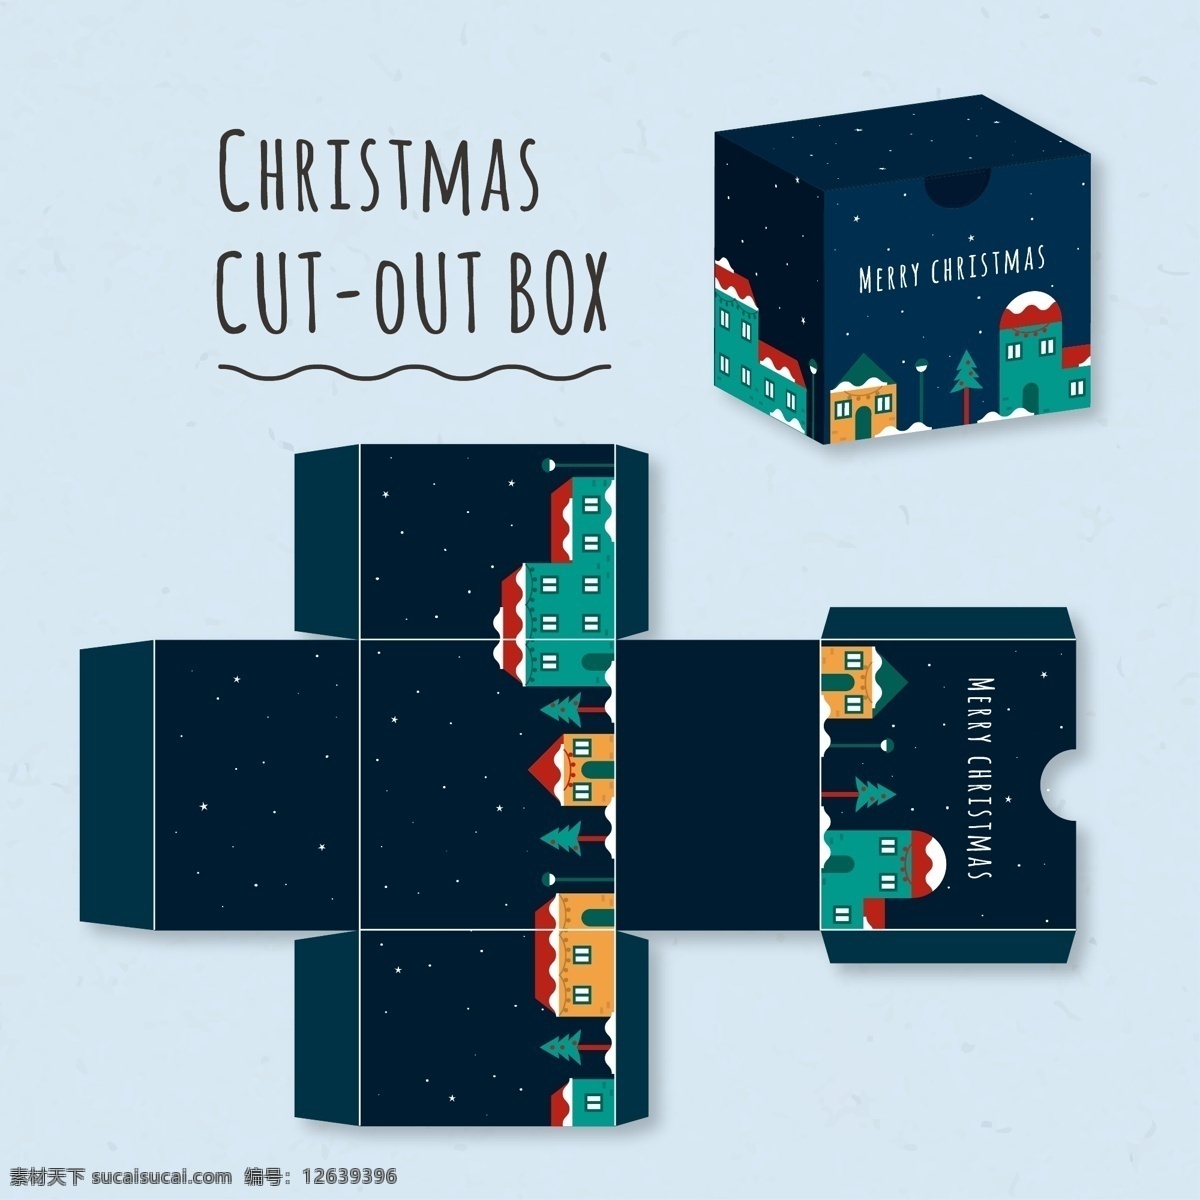 夜晚 可爱 圣诞 盒子 包装 圣诞盒子 圣诞节 圣诞节包装 设计礼盒包装 模切包装 包装模板 圣诞素材 包装设计 黑色